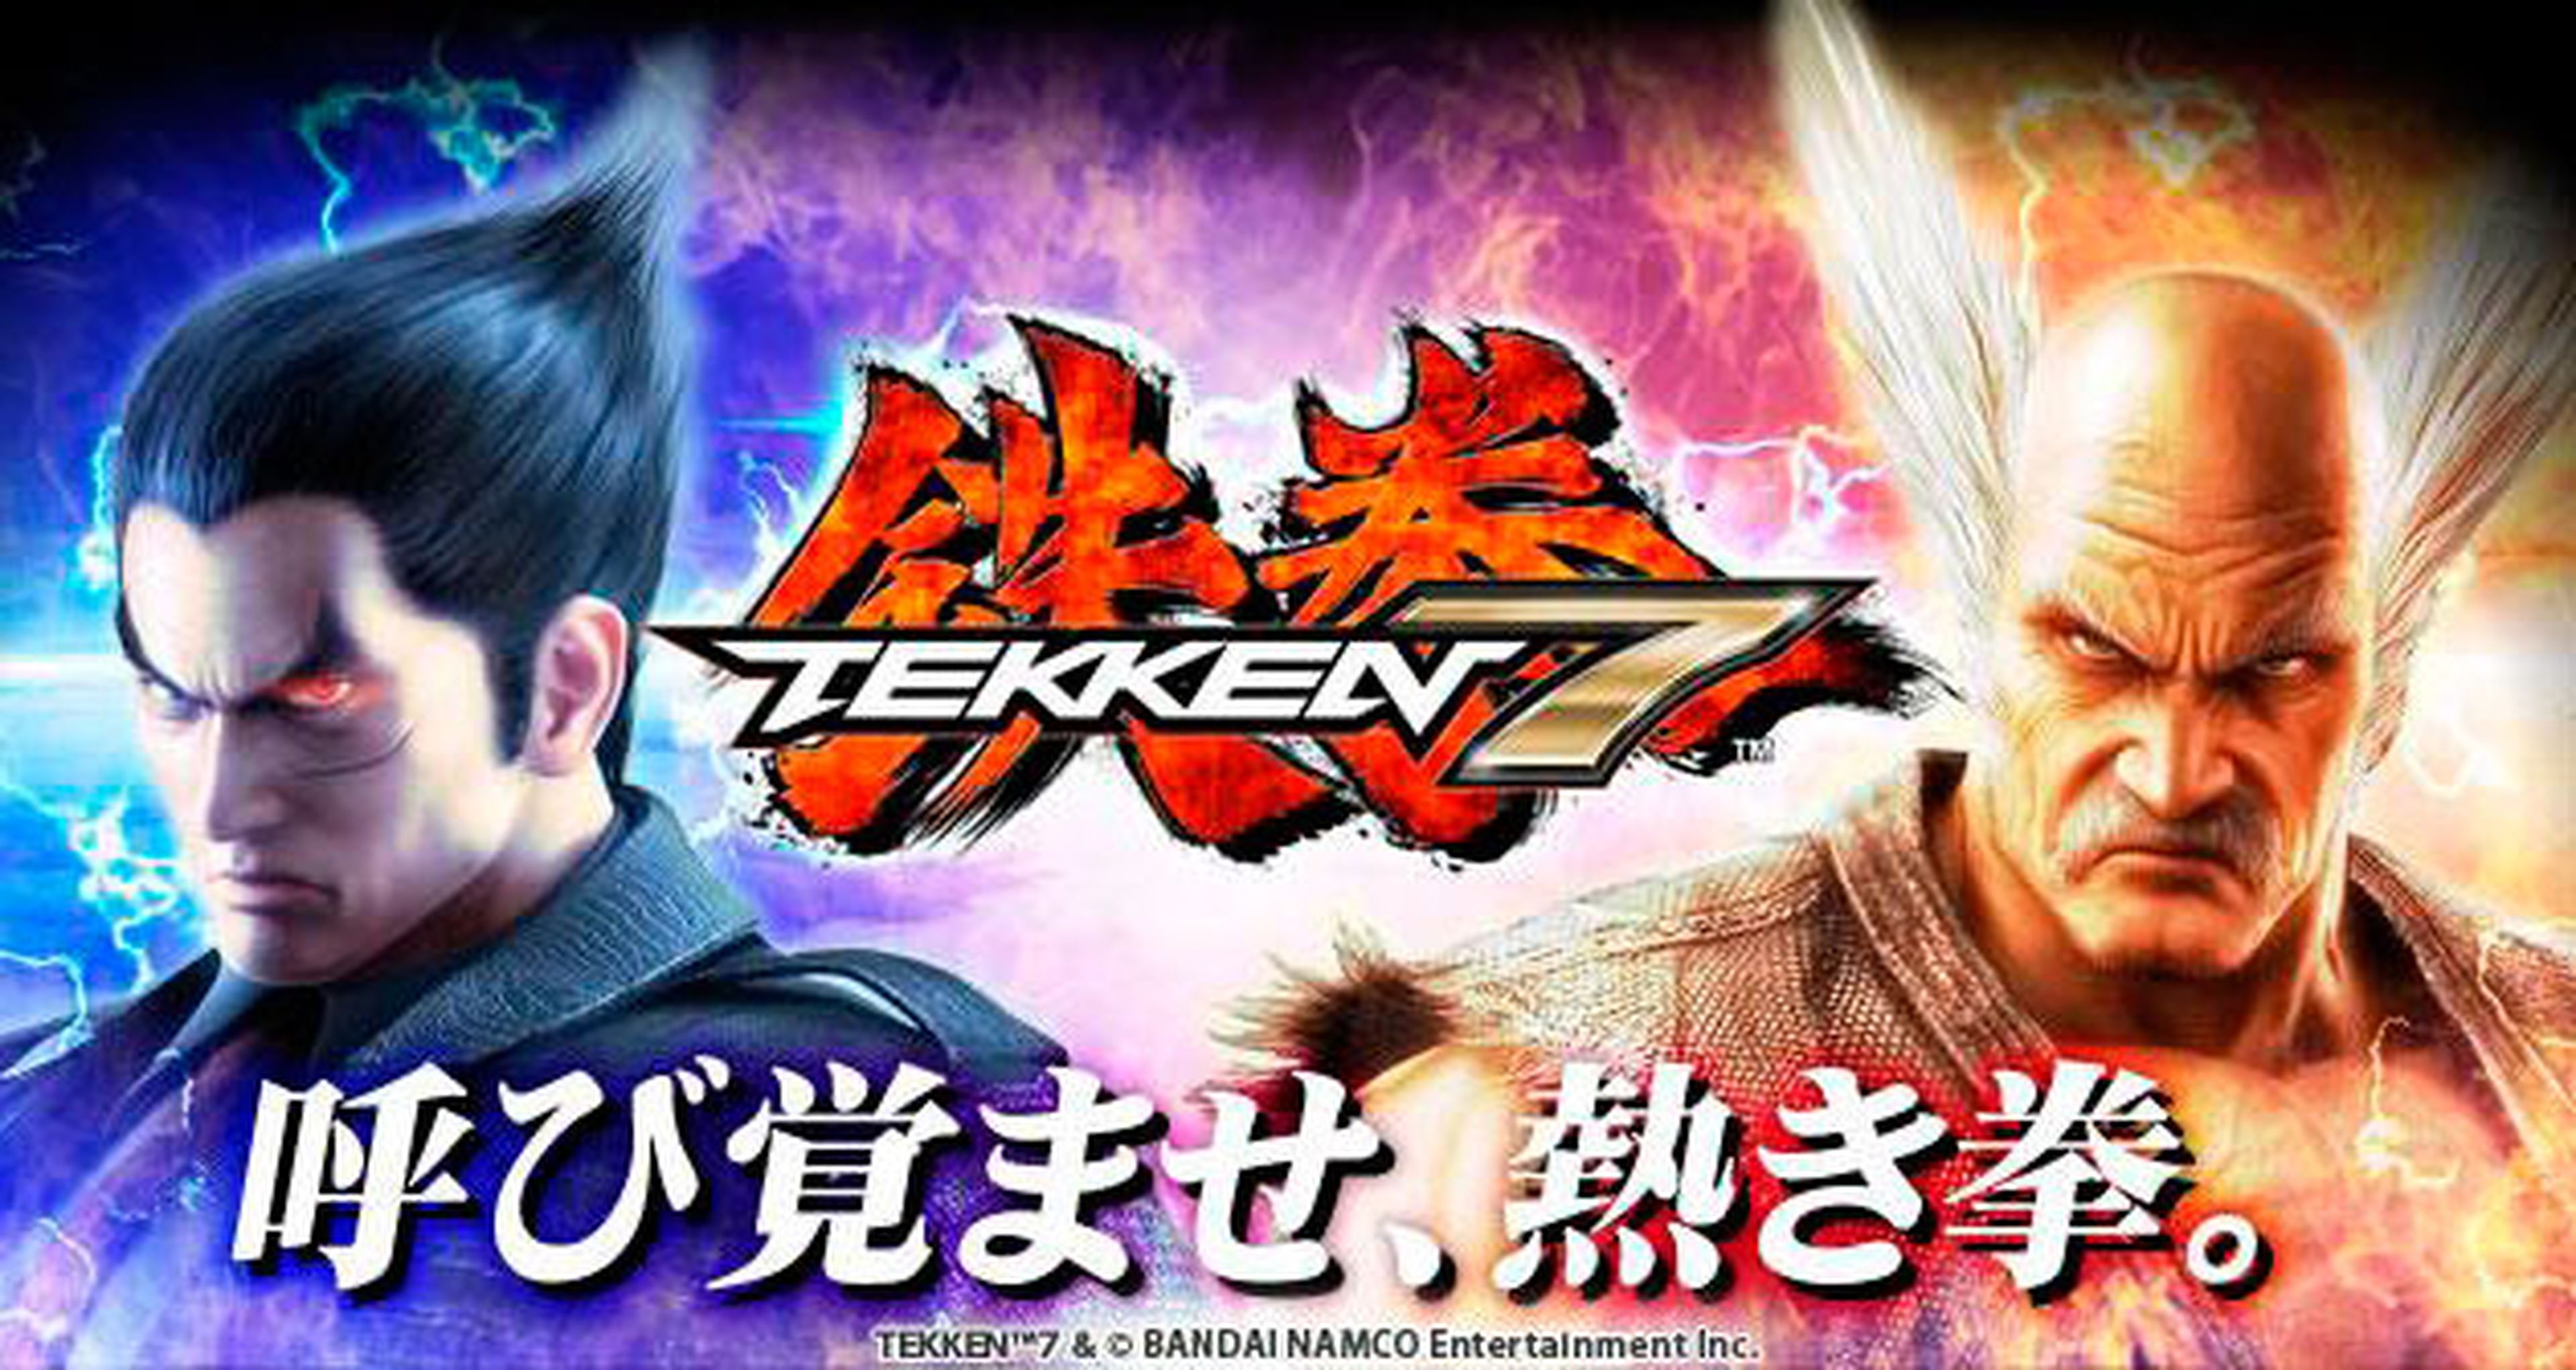 Tekken 7 dará un anuncio importante el próximo 7 de julio